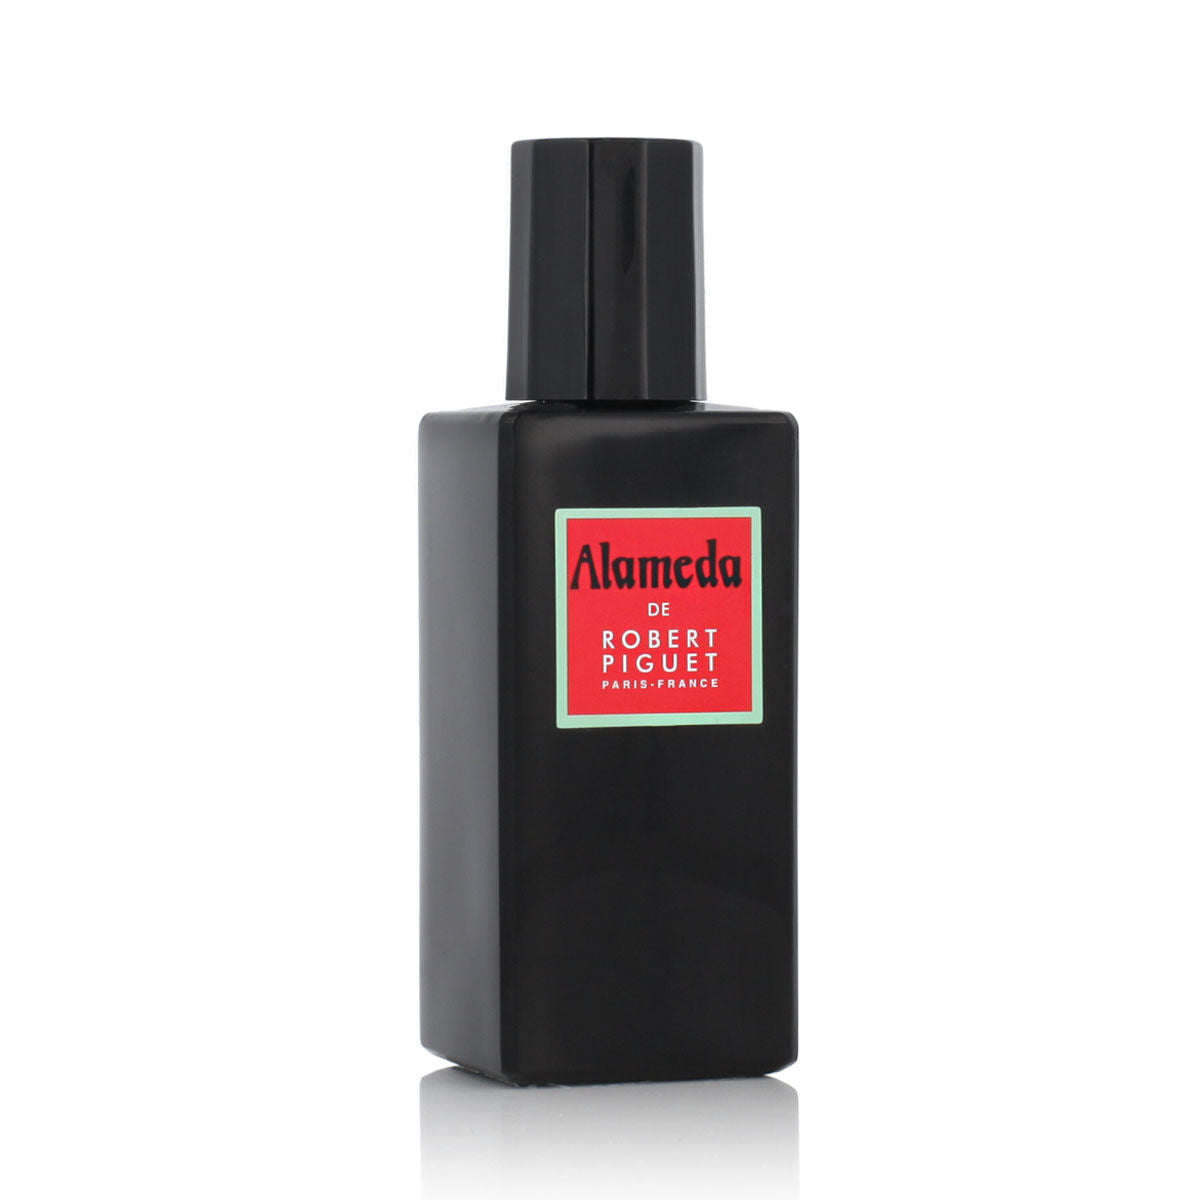 Kaufe Unisex-Parfüm Robert Piguet EDP Alameda 100 ml bei AWK Flagship um € 79.00